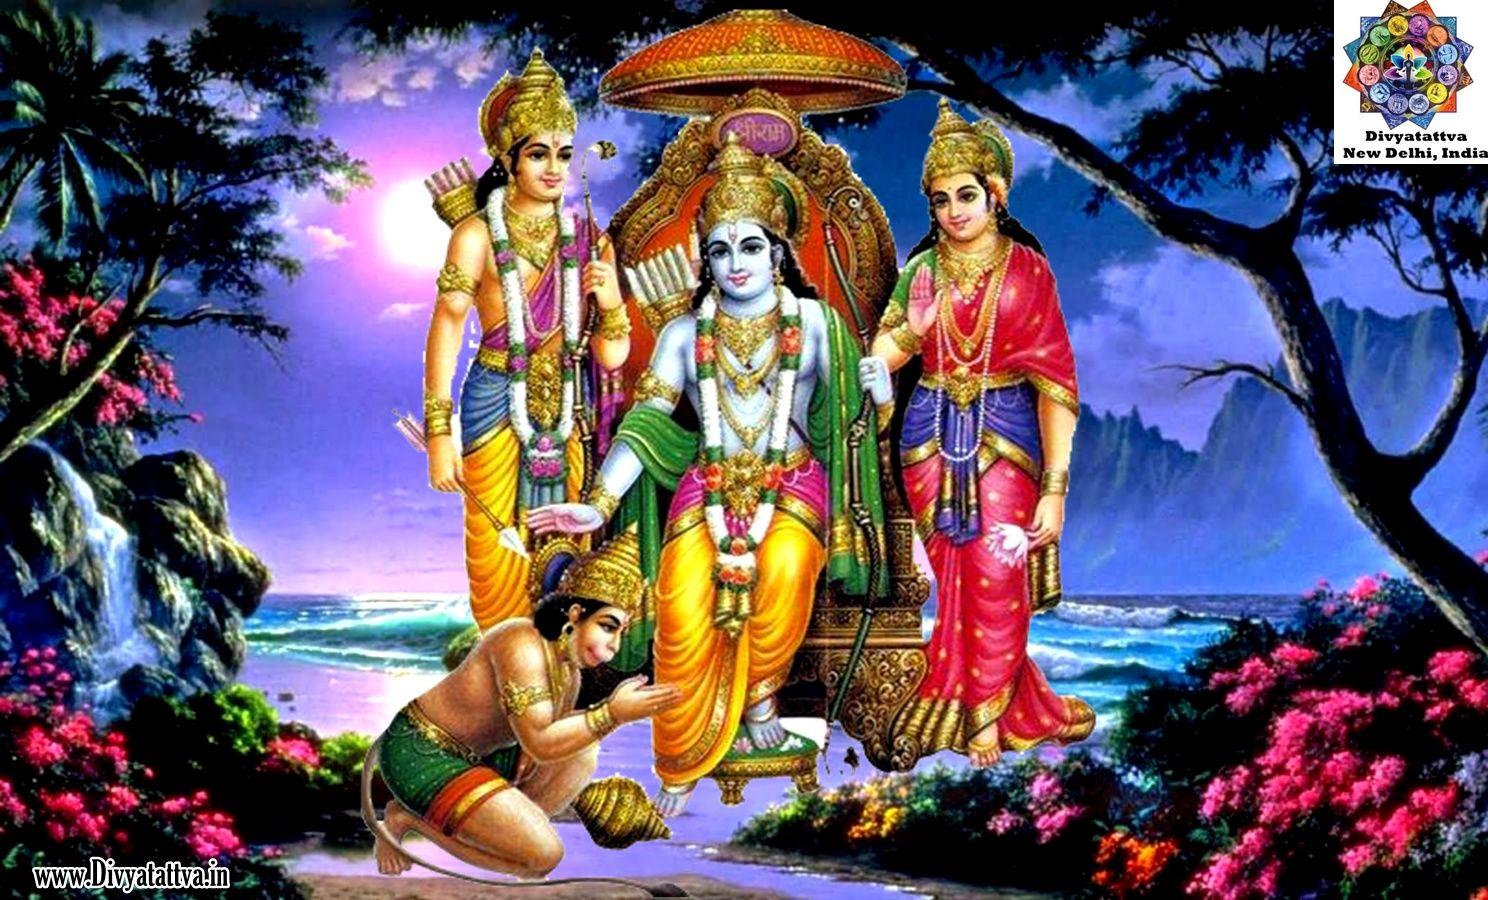 1488x900 Divyatattva Chiêm tinh học Miễn phí Tử vi Tâm linh Bói bài Yoga Tantra Huyền bí Hình ảnh Video: Chúa Rama Sita Hanuman Hình nền HD Tải xuống miễn phí Hình nền các vị thần Hindu